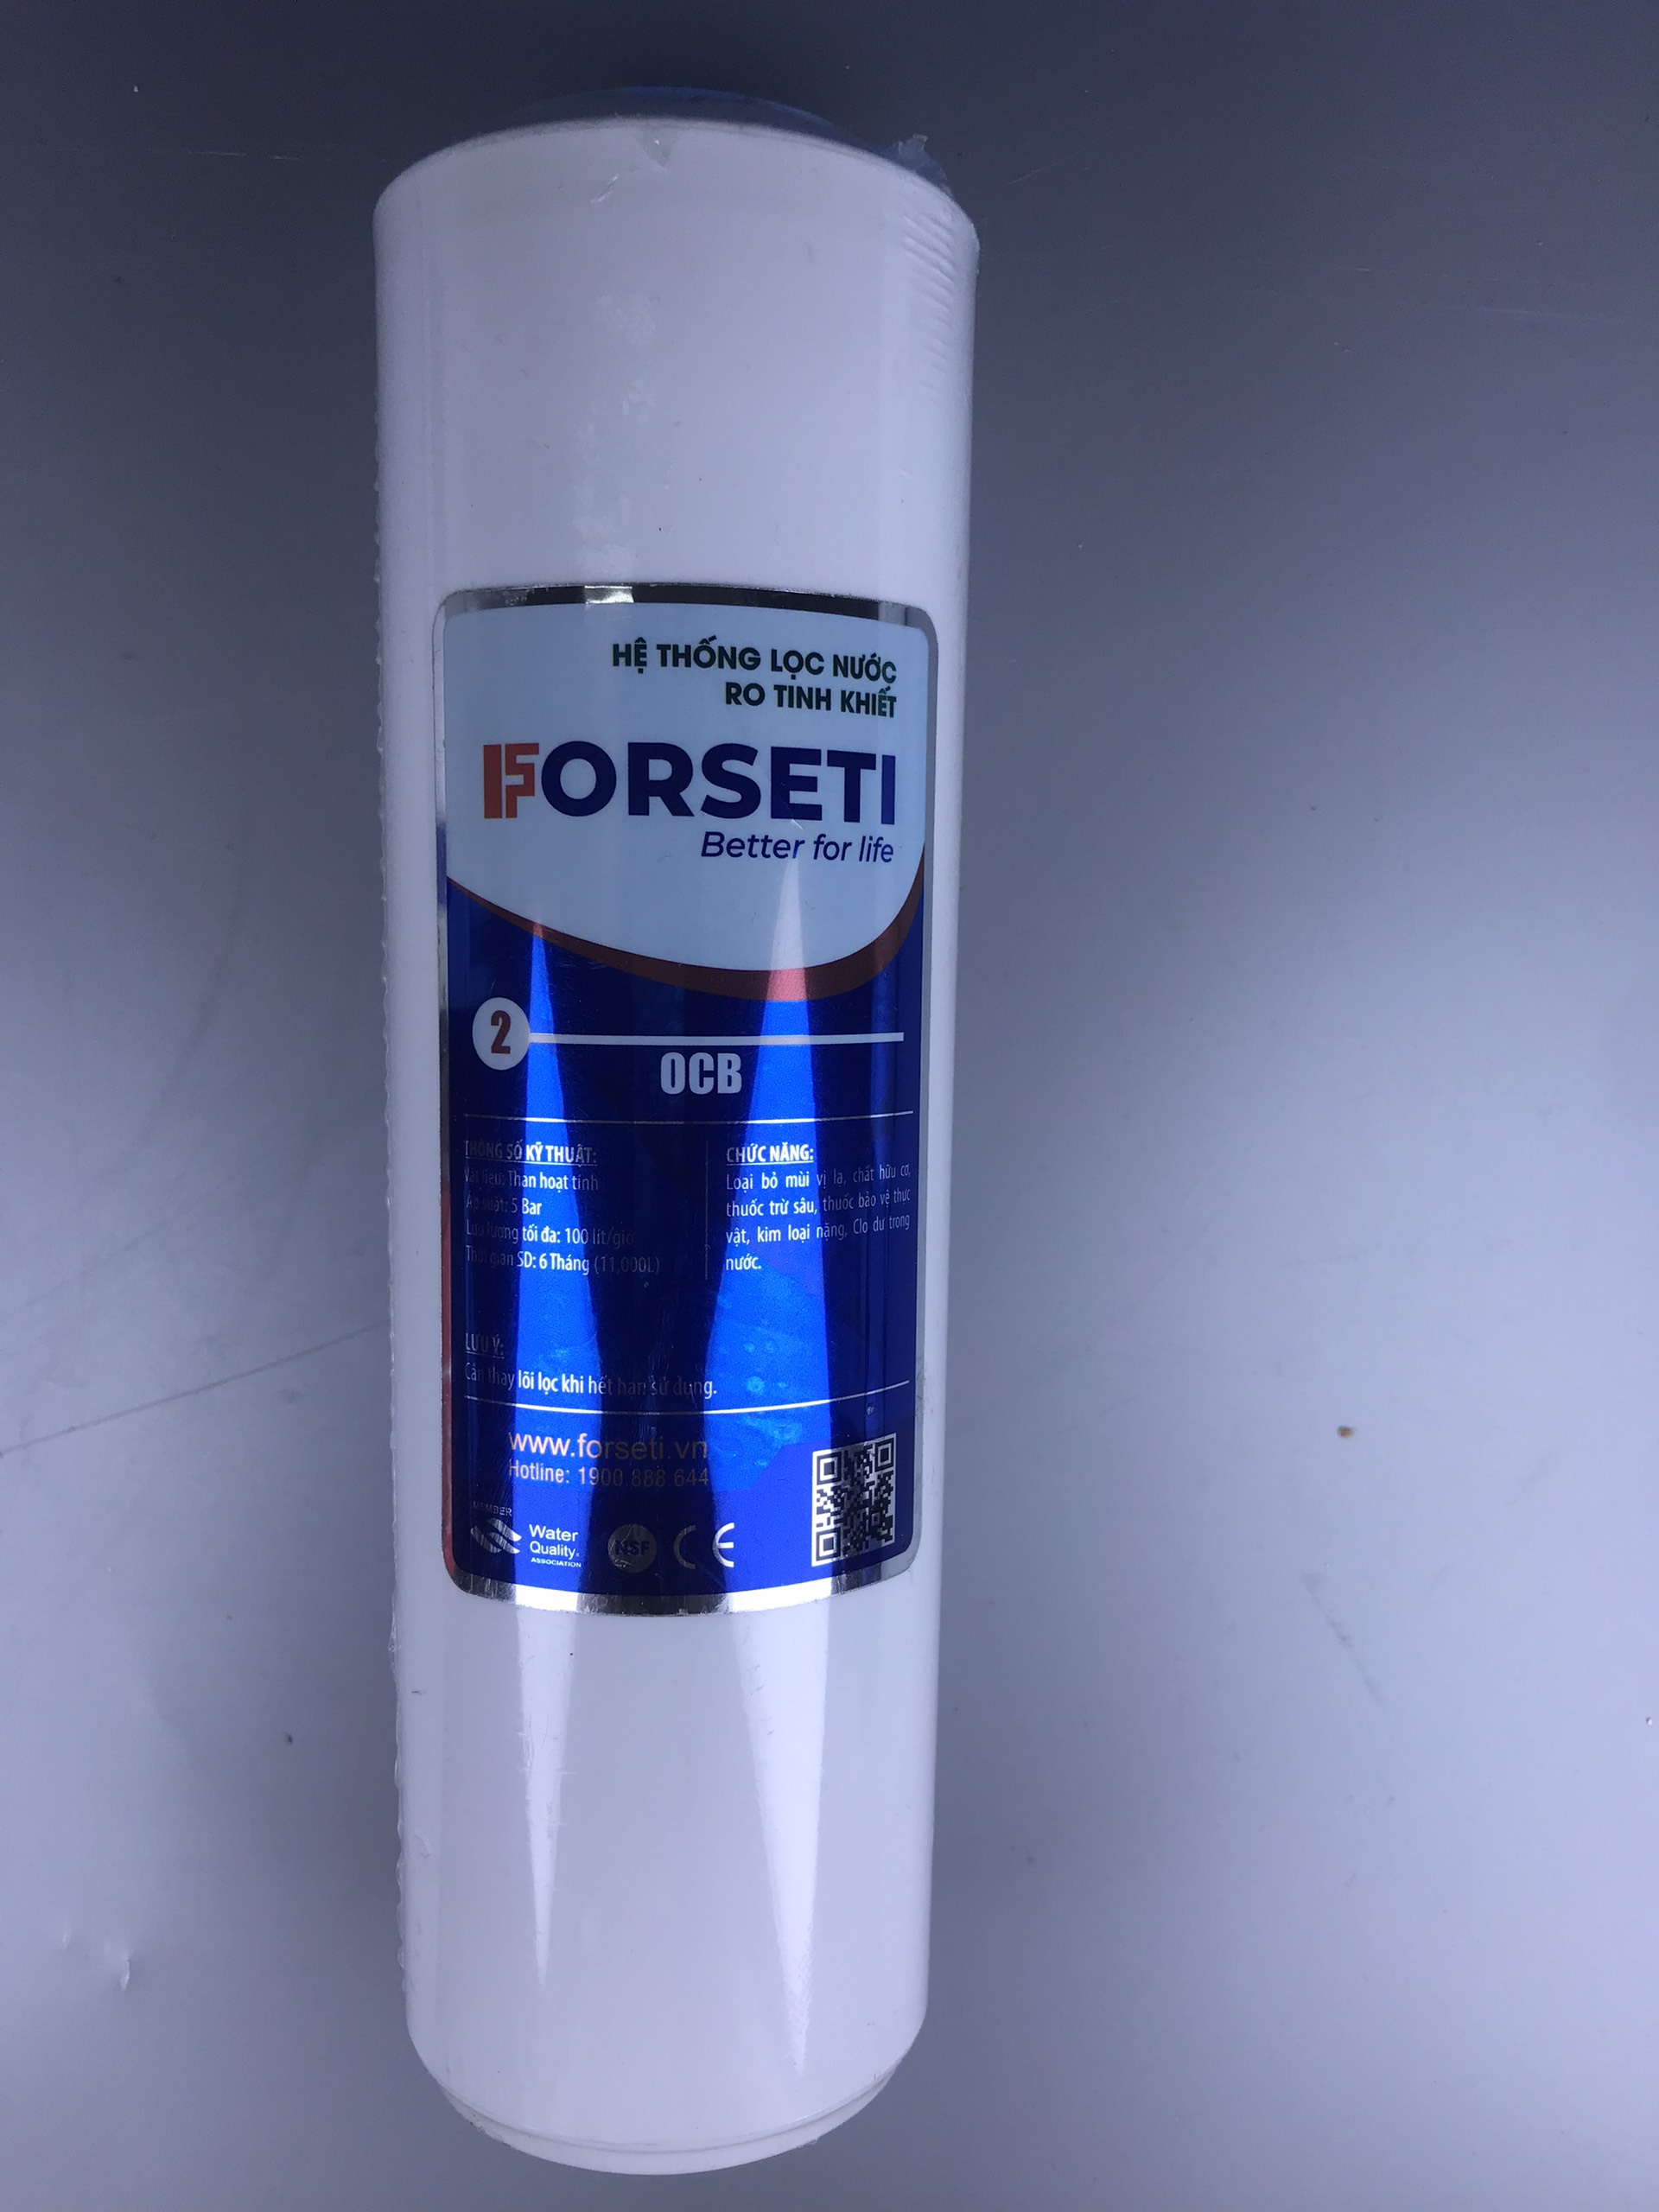 Lõi lọc nước số 2 Forseti giúp loại bỏ mùi hôi - Hàng chính hãng